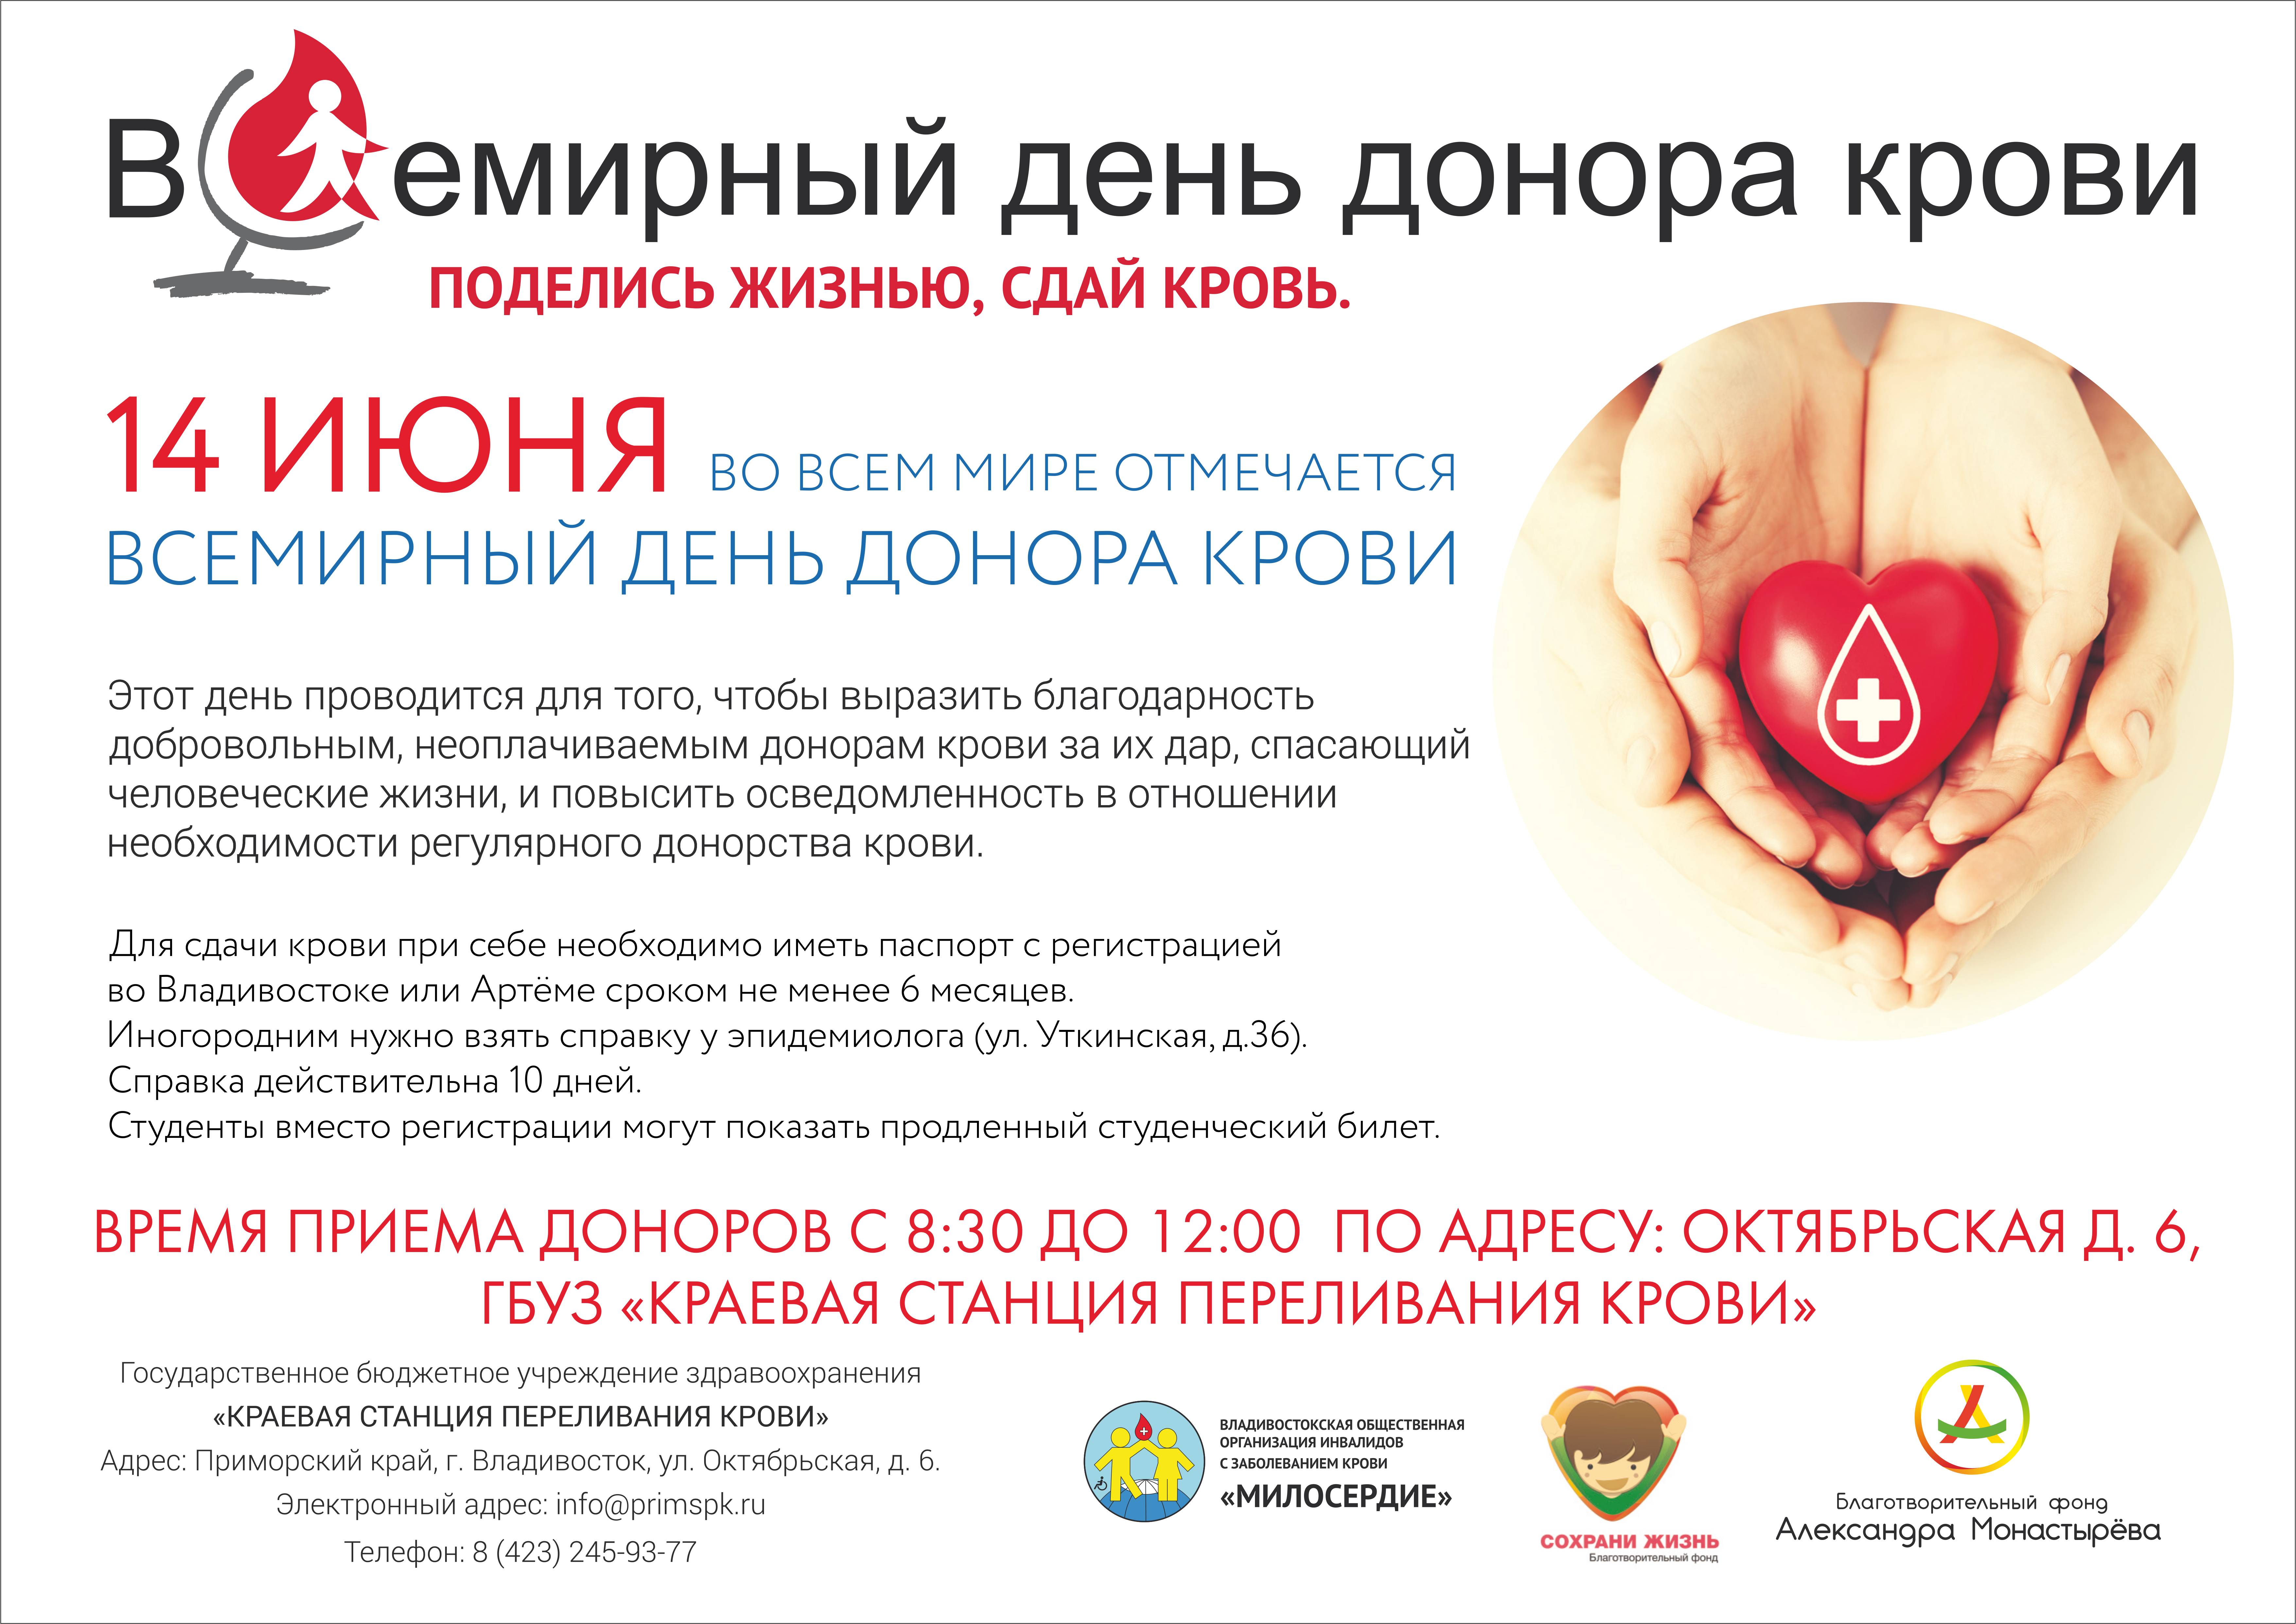 Всемирный день донора крови - world blood donor day - abcdef.wiki